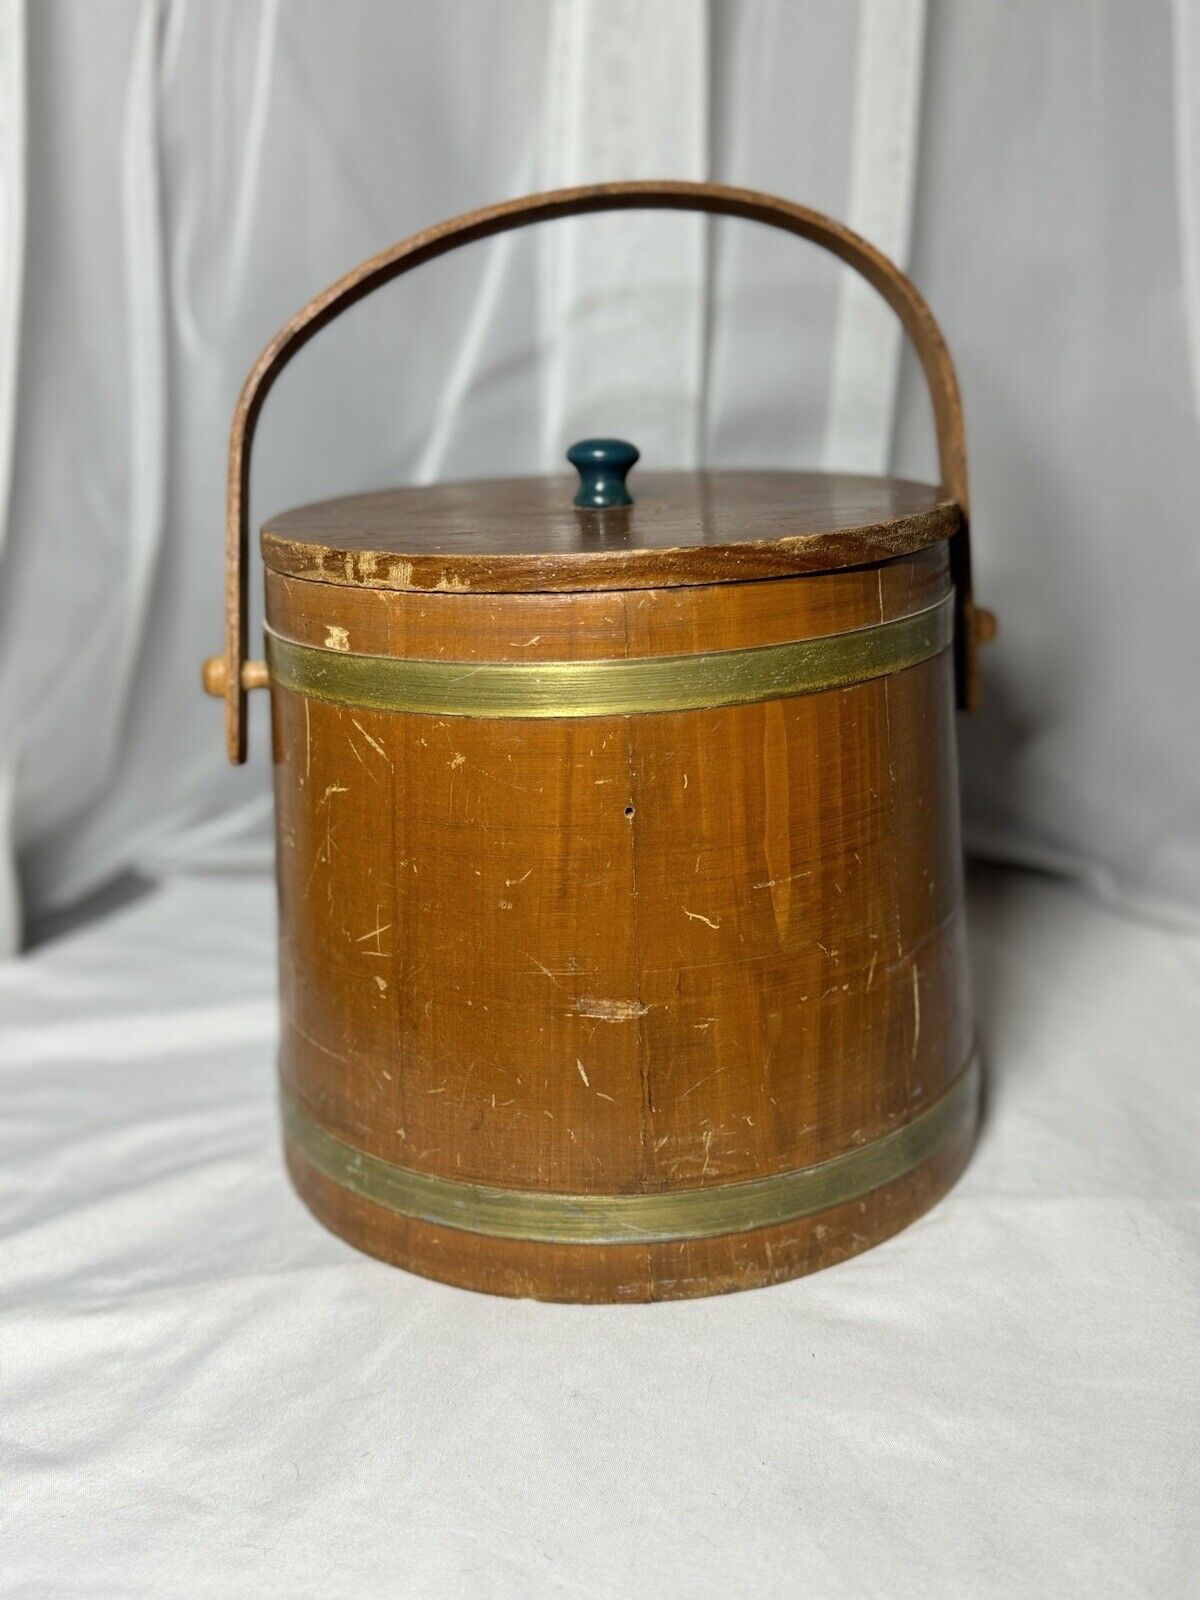 Vintage/Antique Round Wood Pantry Box Knob Lid 7” Dia Farmhouse Primitive Rustic